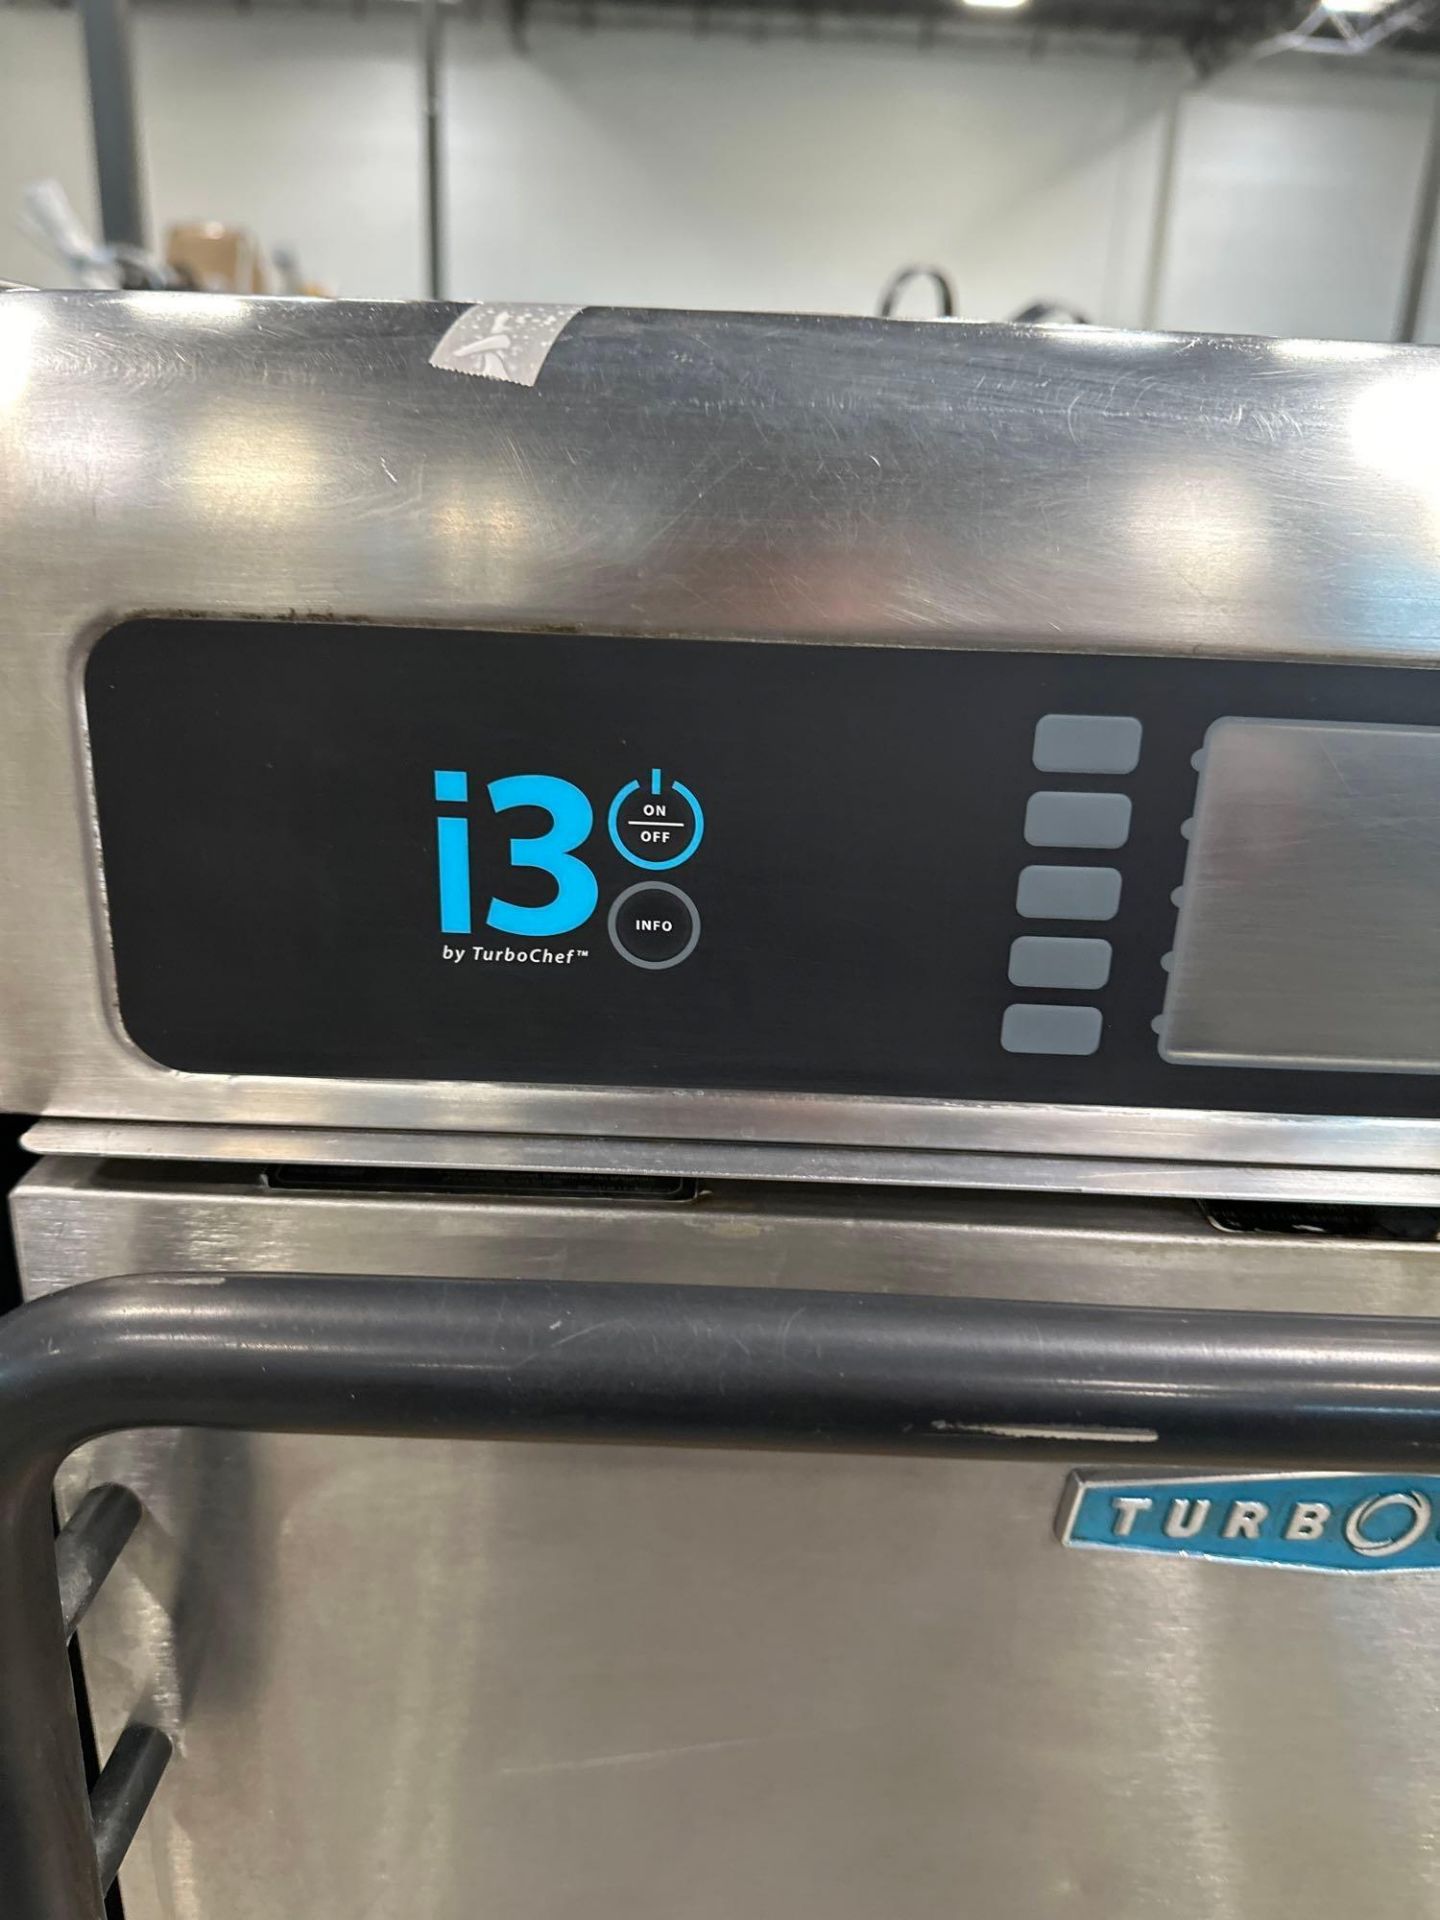 i3 TurboChef oven - Image 2 of 5